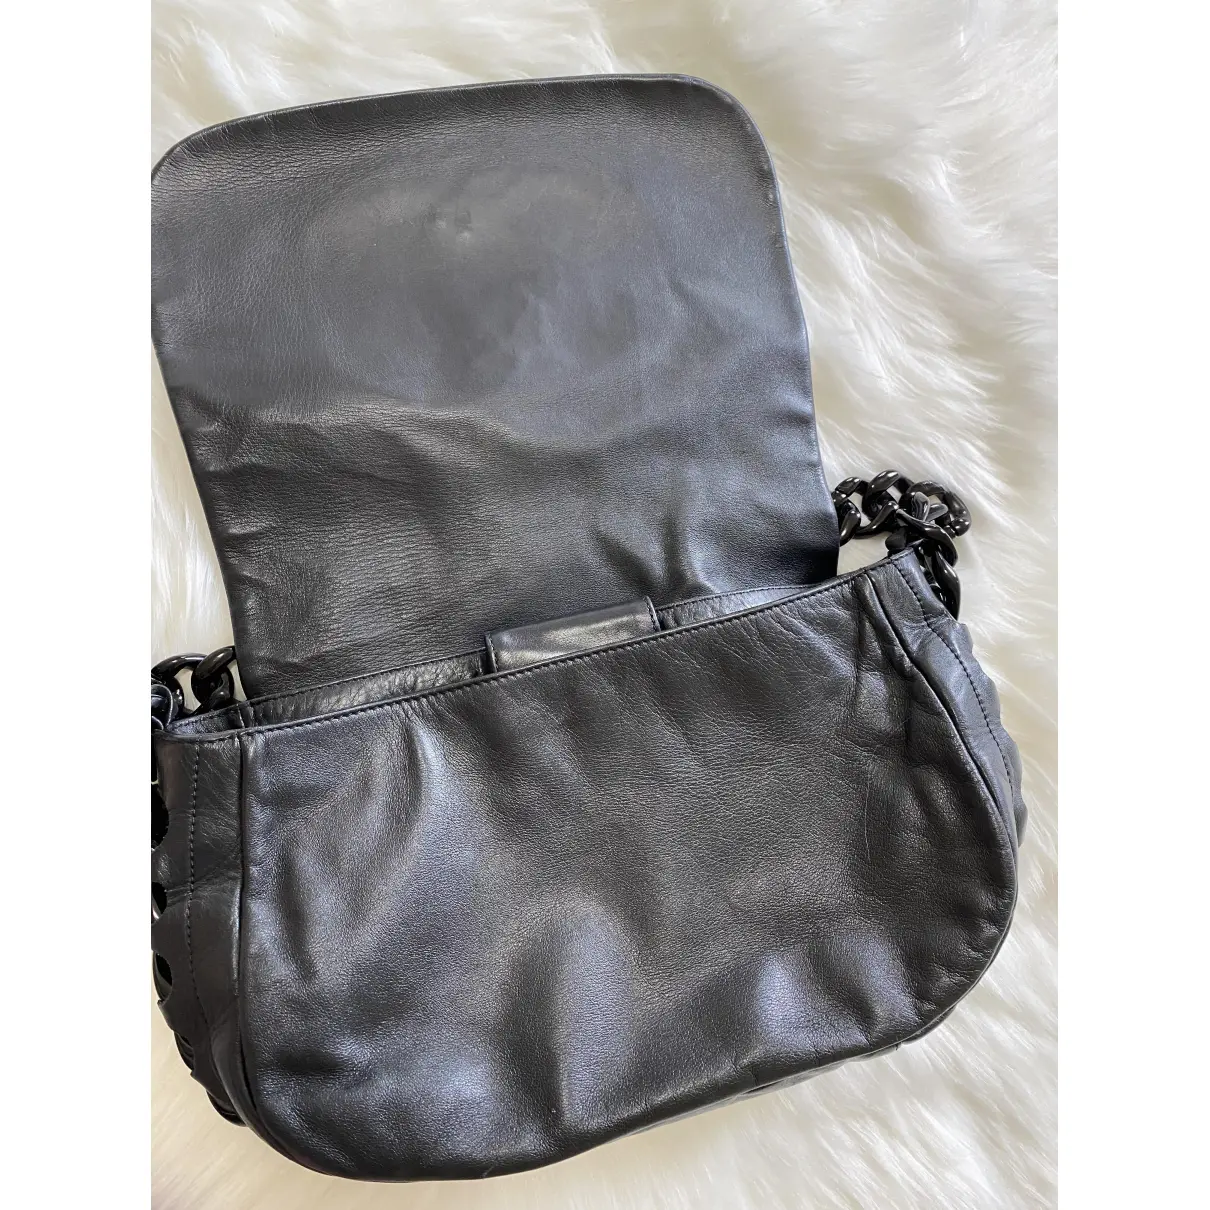 Buy Chanel Leather handbag online - Vintage